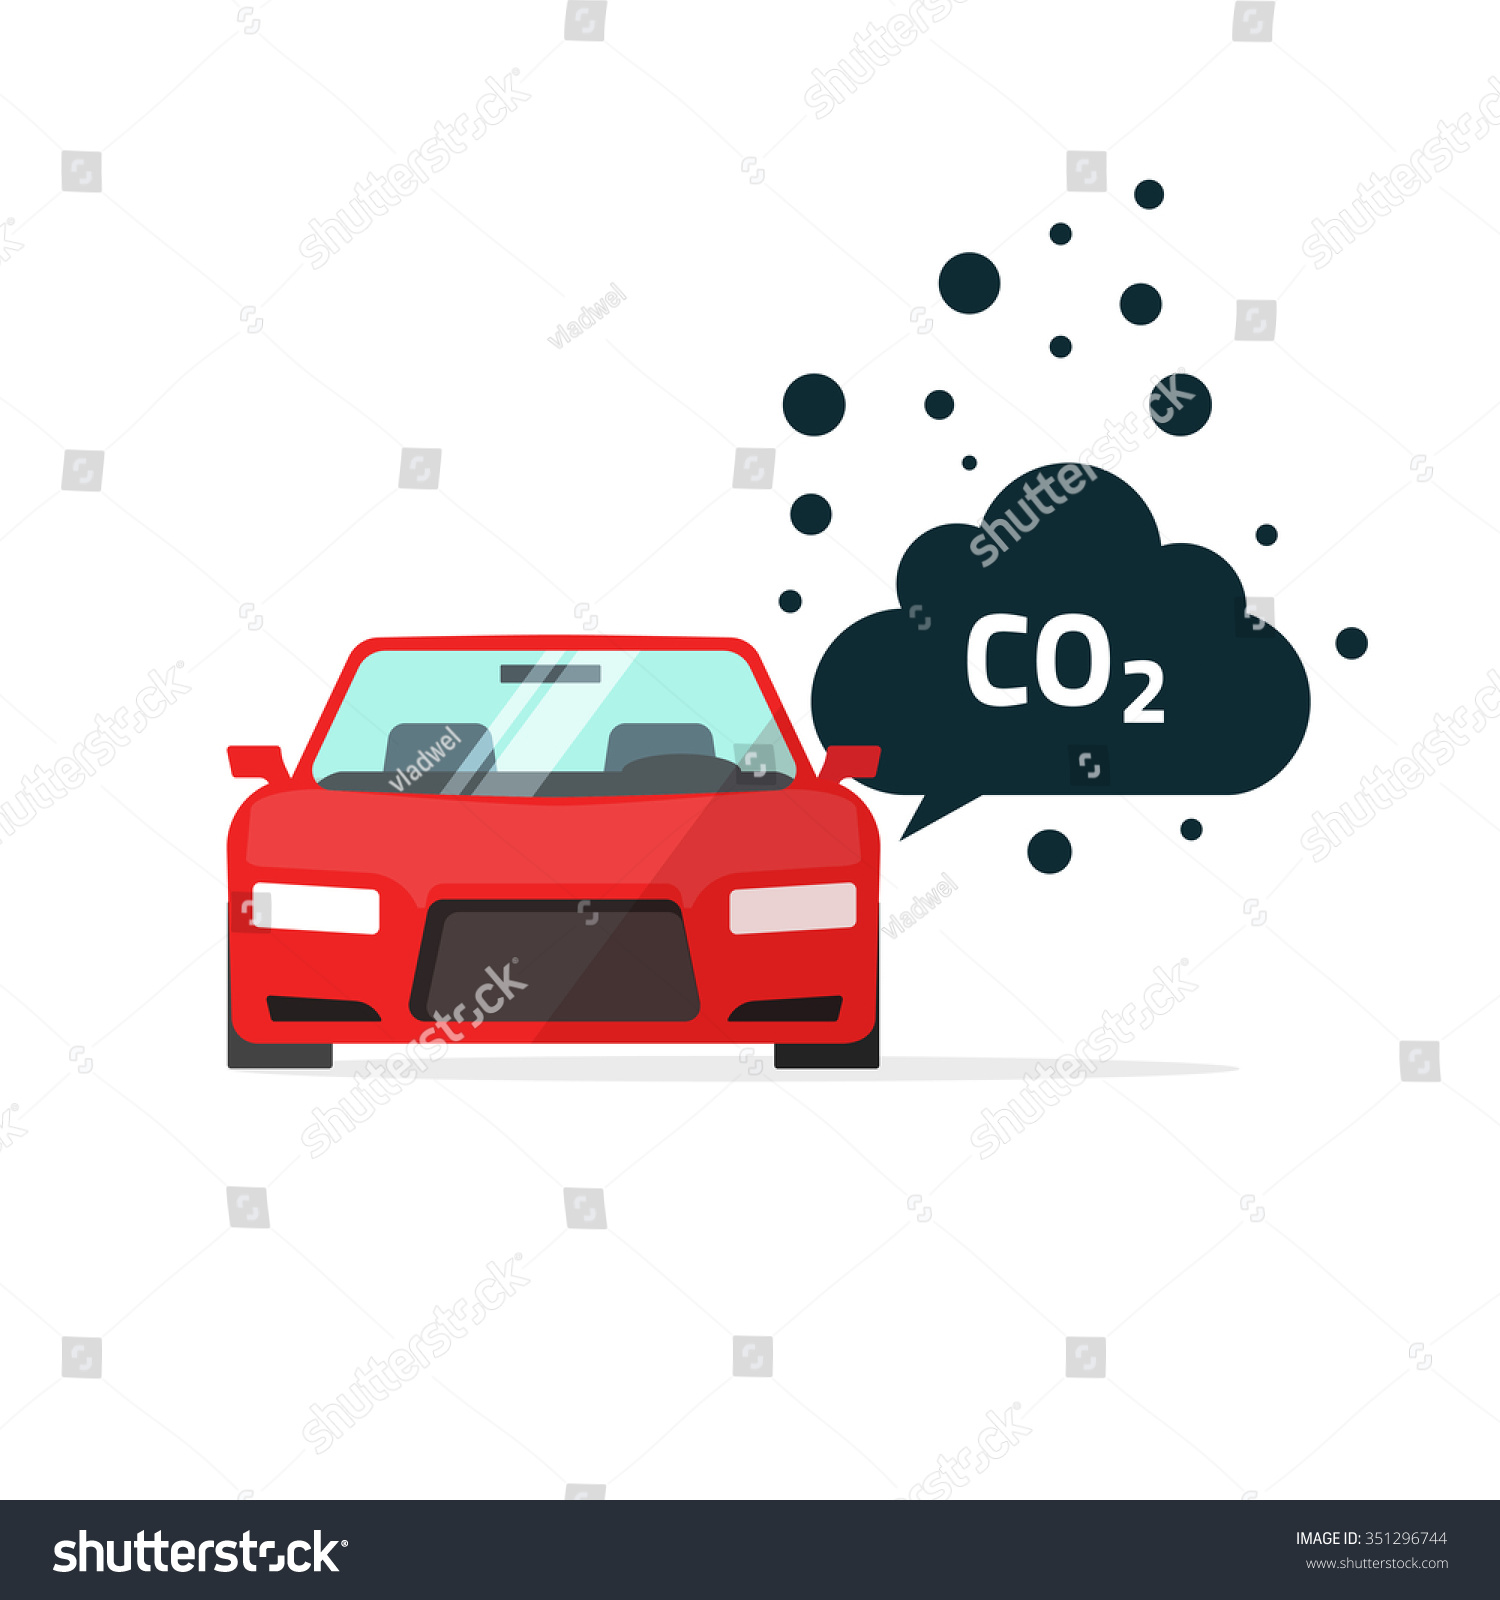 Co2 Emissions Vector Illustration, Carbon Dioxide Emits Symbol, Smog ...